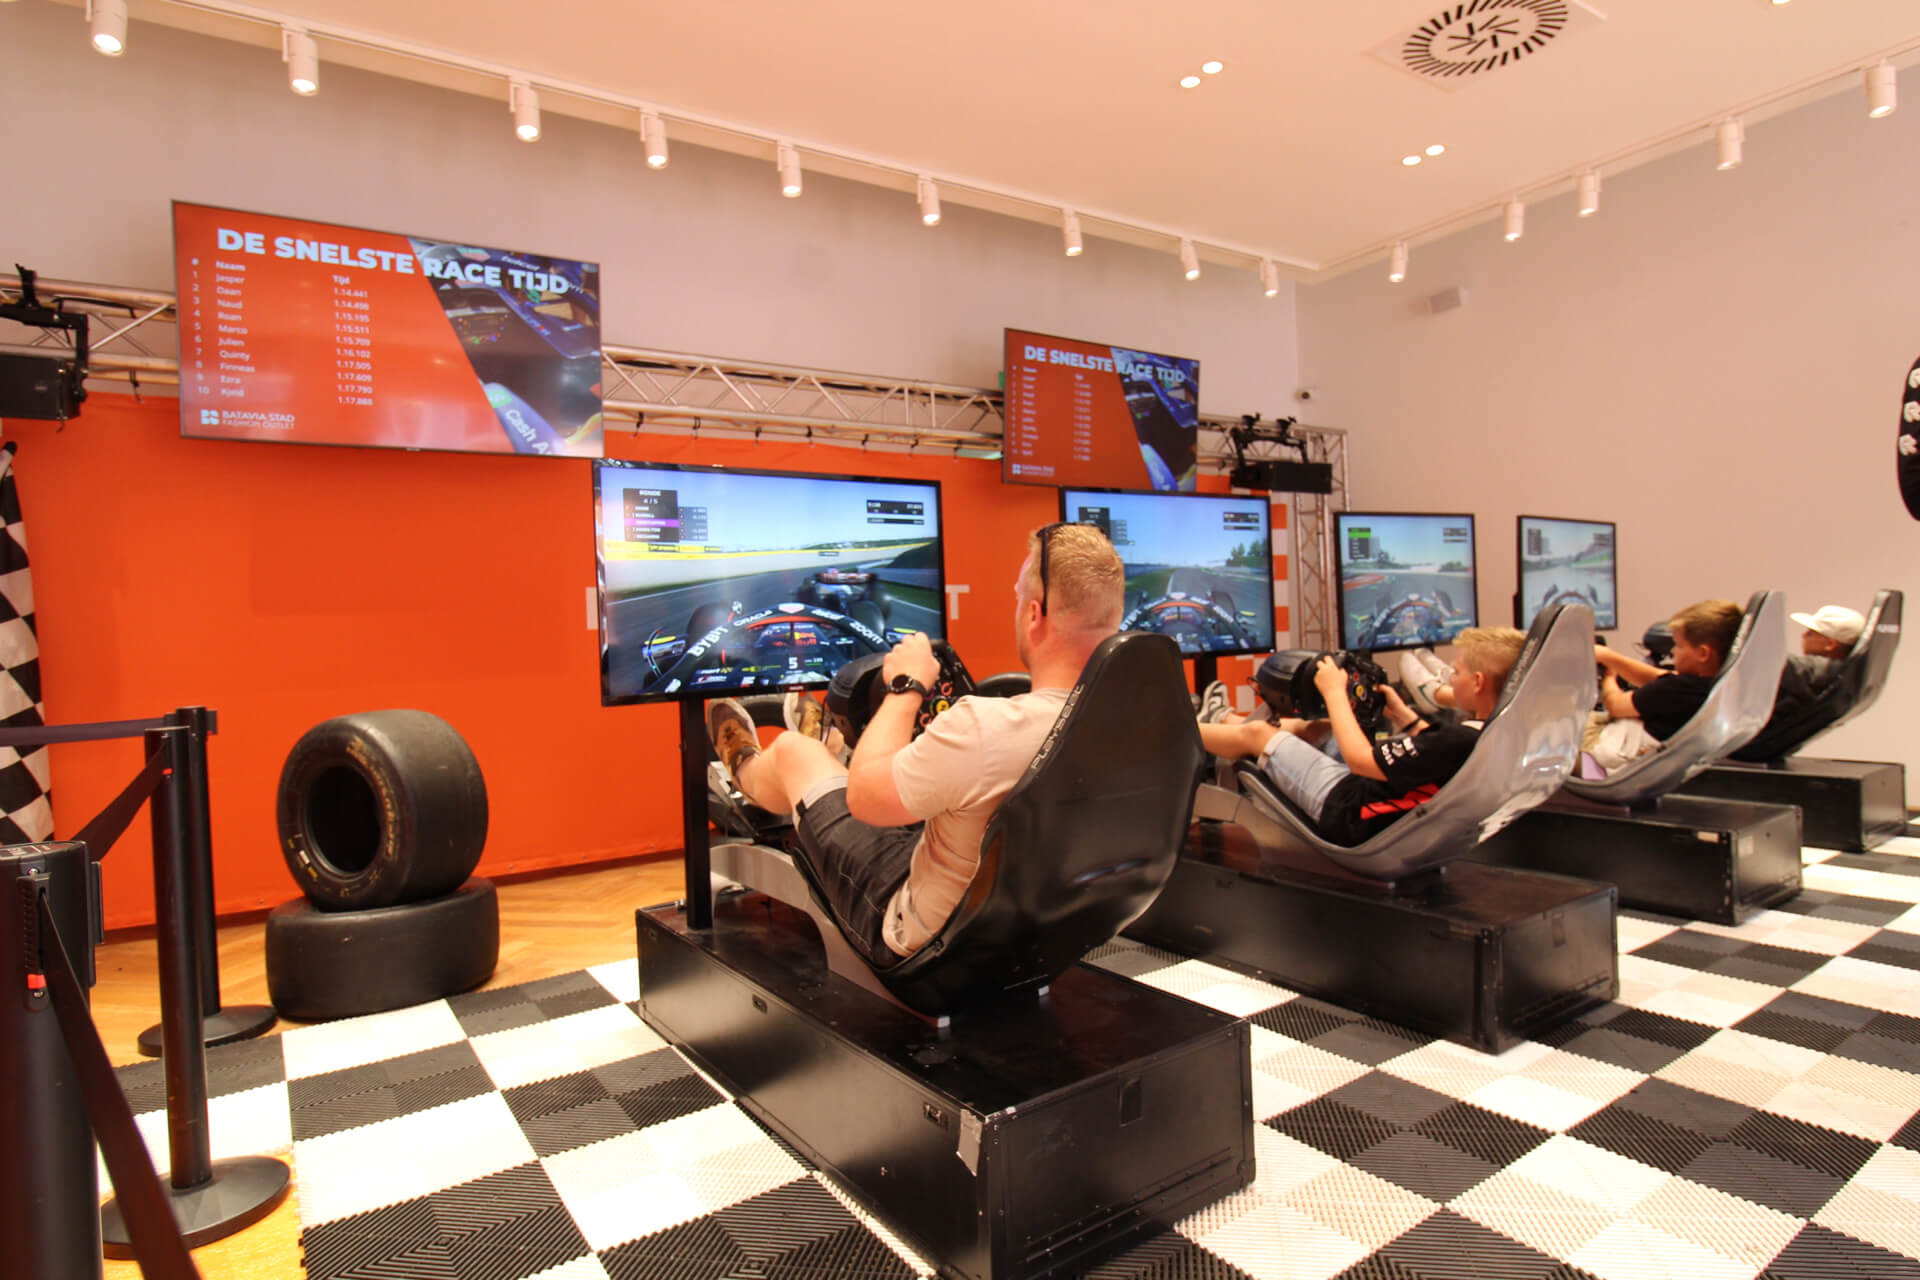 Vier Formule 1 race simulatoren op een rij bij Bataviastad